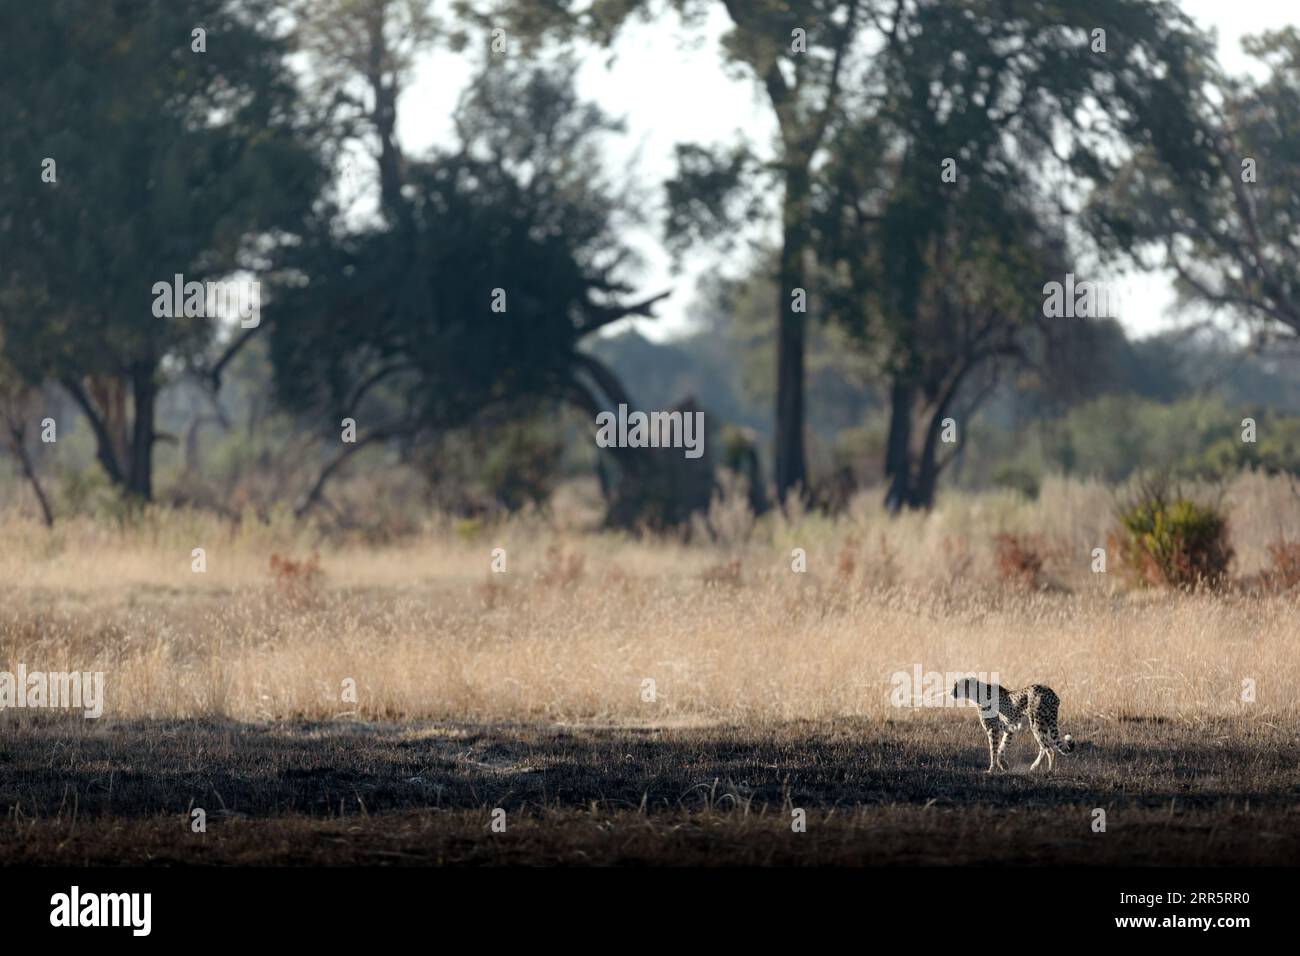 Un Cheetah mince et rapide fait son chemin à travers une plaine ouverte comme il chasse dans les zones boisées du delta de l'Okavango, Botswana. Banque D'Images